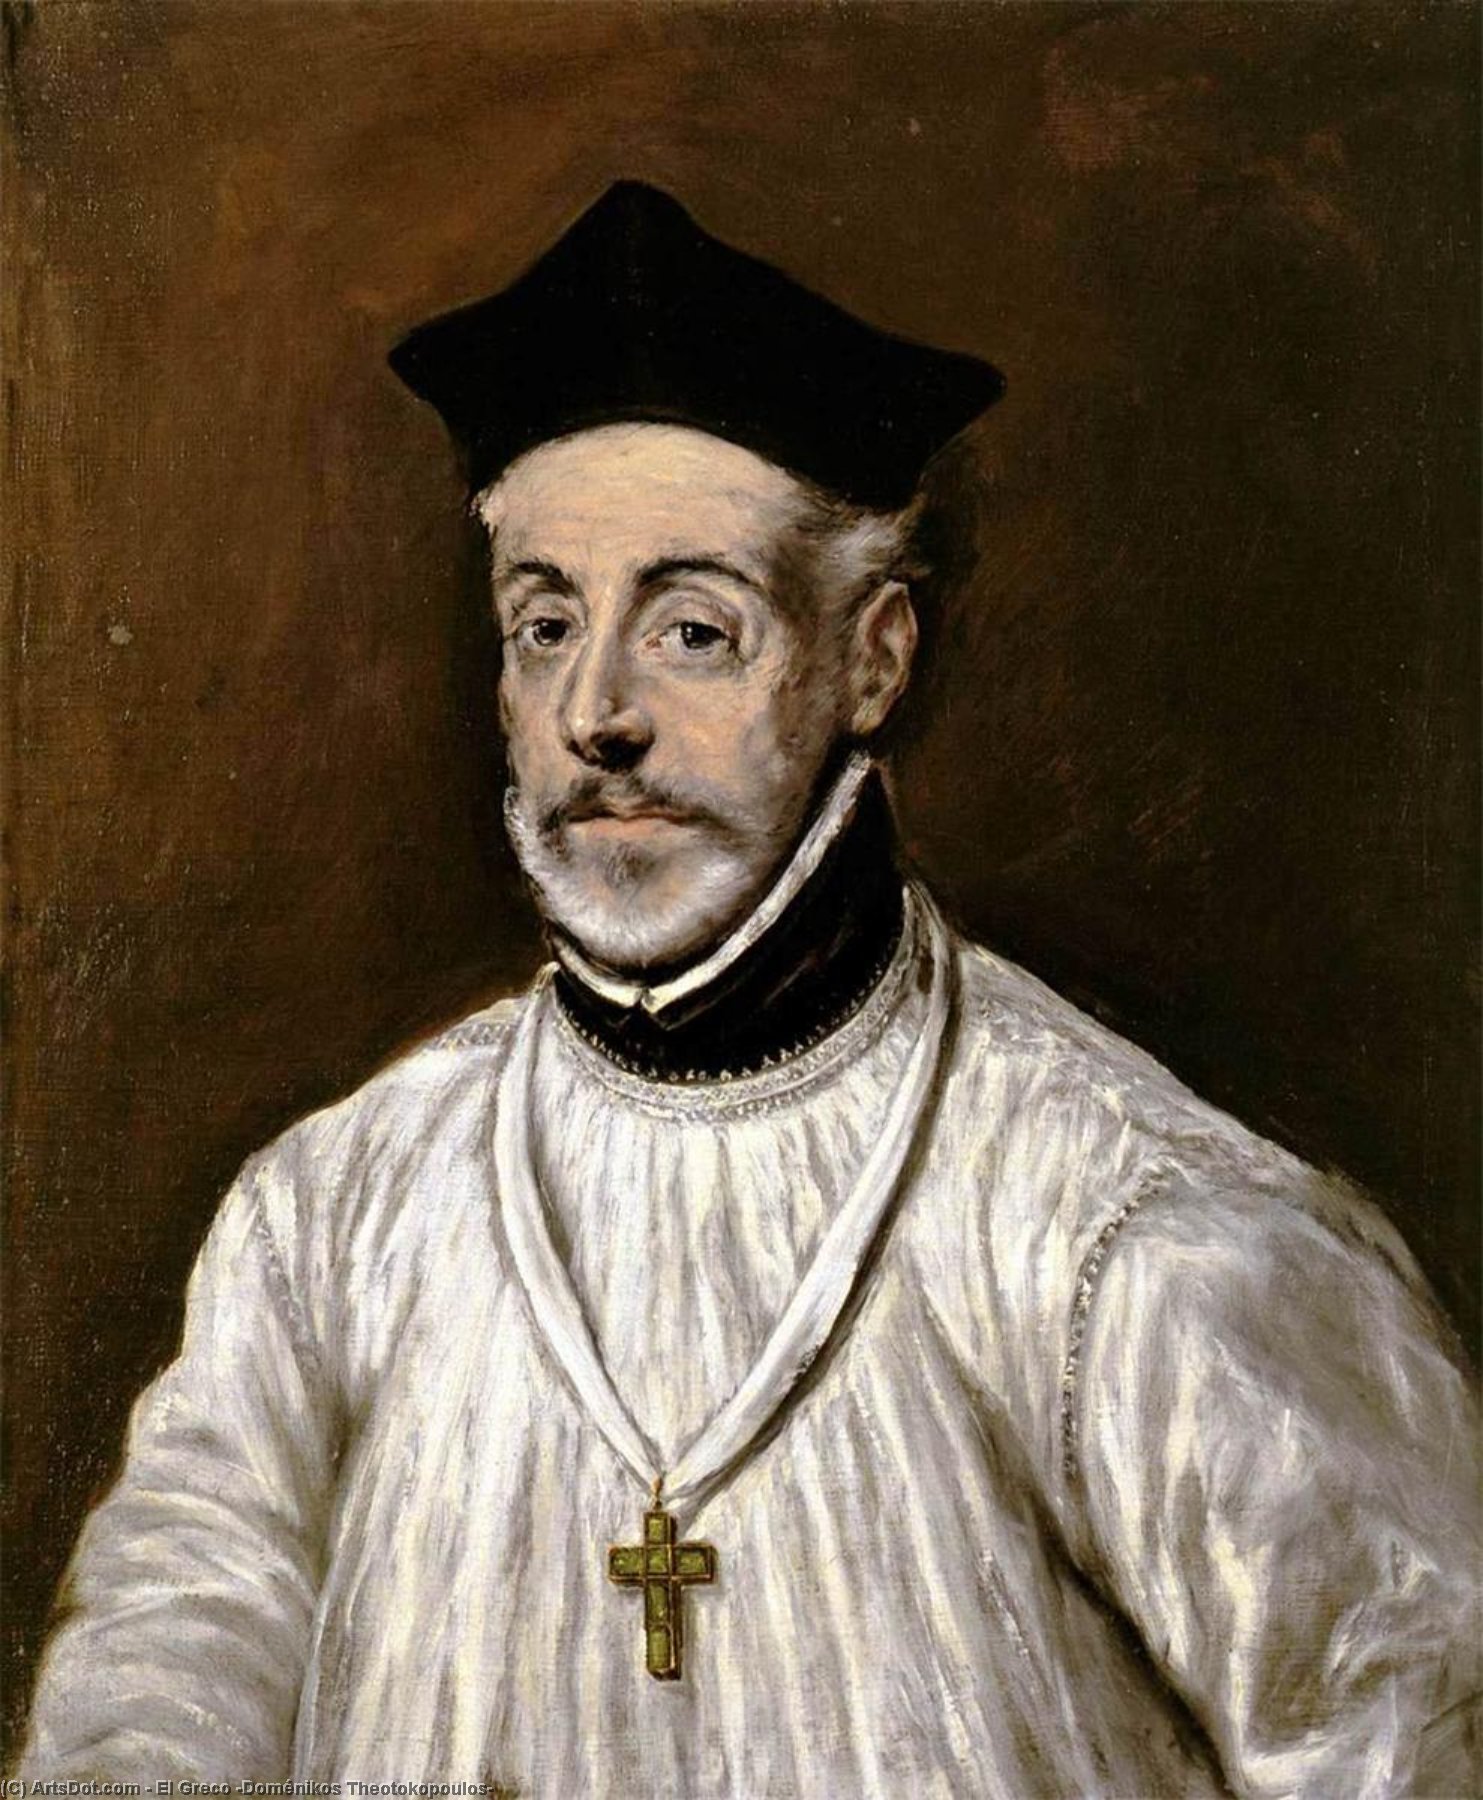 WikiOO.org - Encyclopedia of Fine Arts - Lukisan, Artwork El Greco (Doménikos Theotokopoulos) - Portrait of Diego de Covarrubias